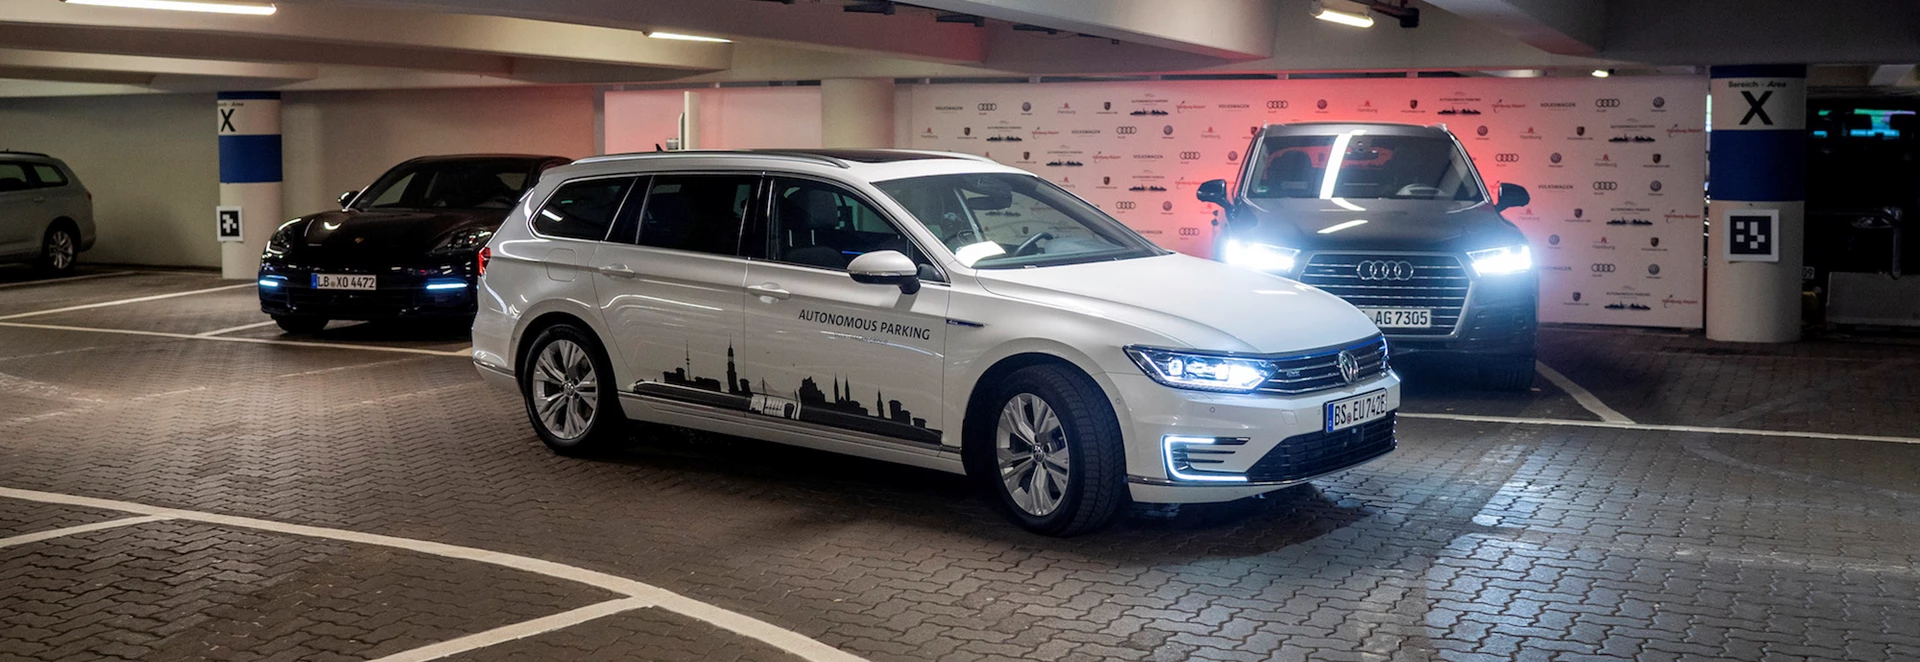 Volkswagen testing autonomous parking technology